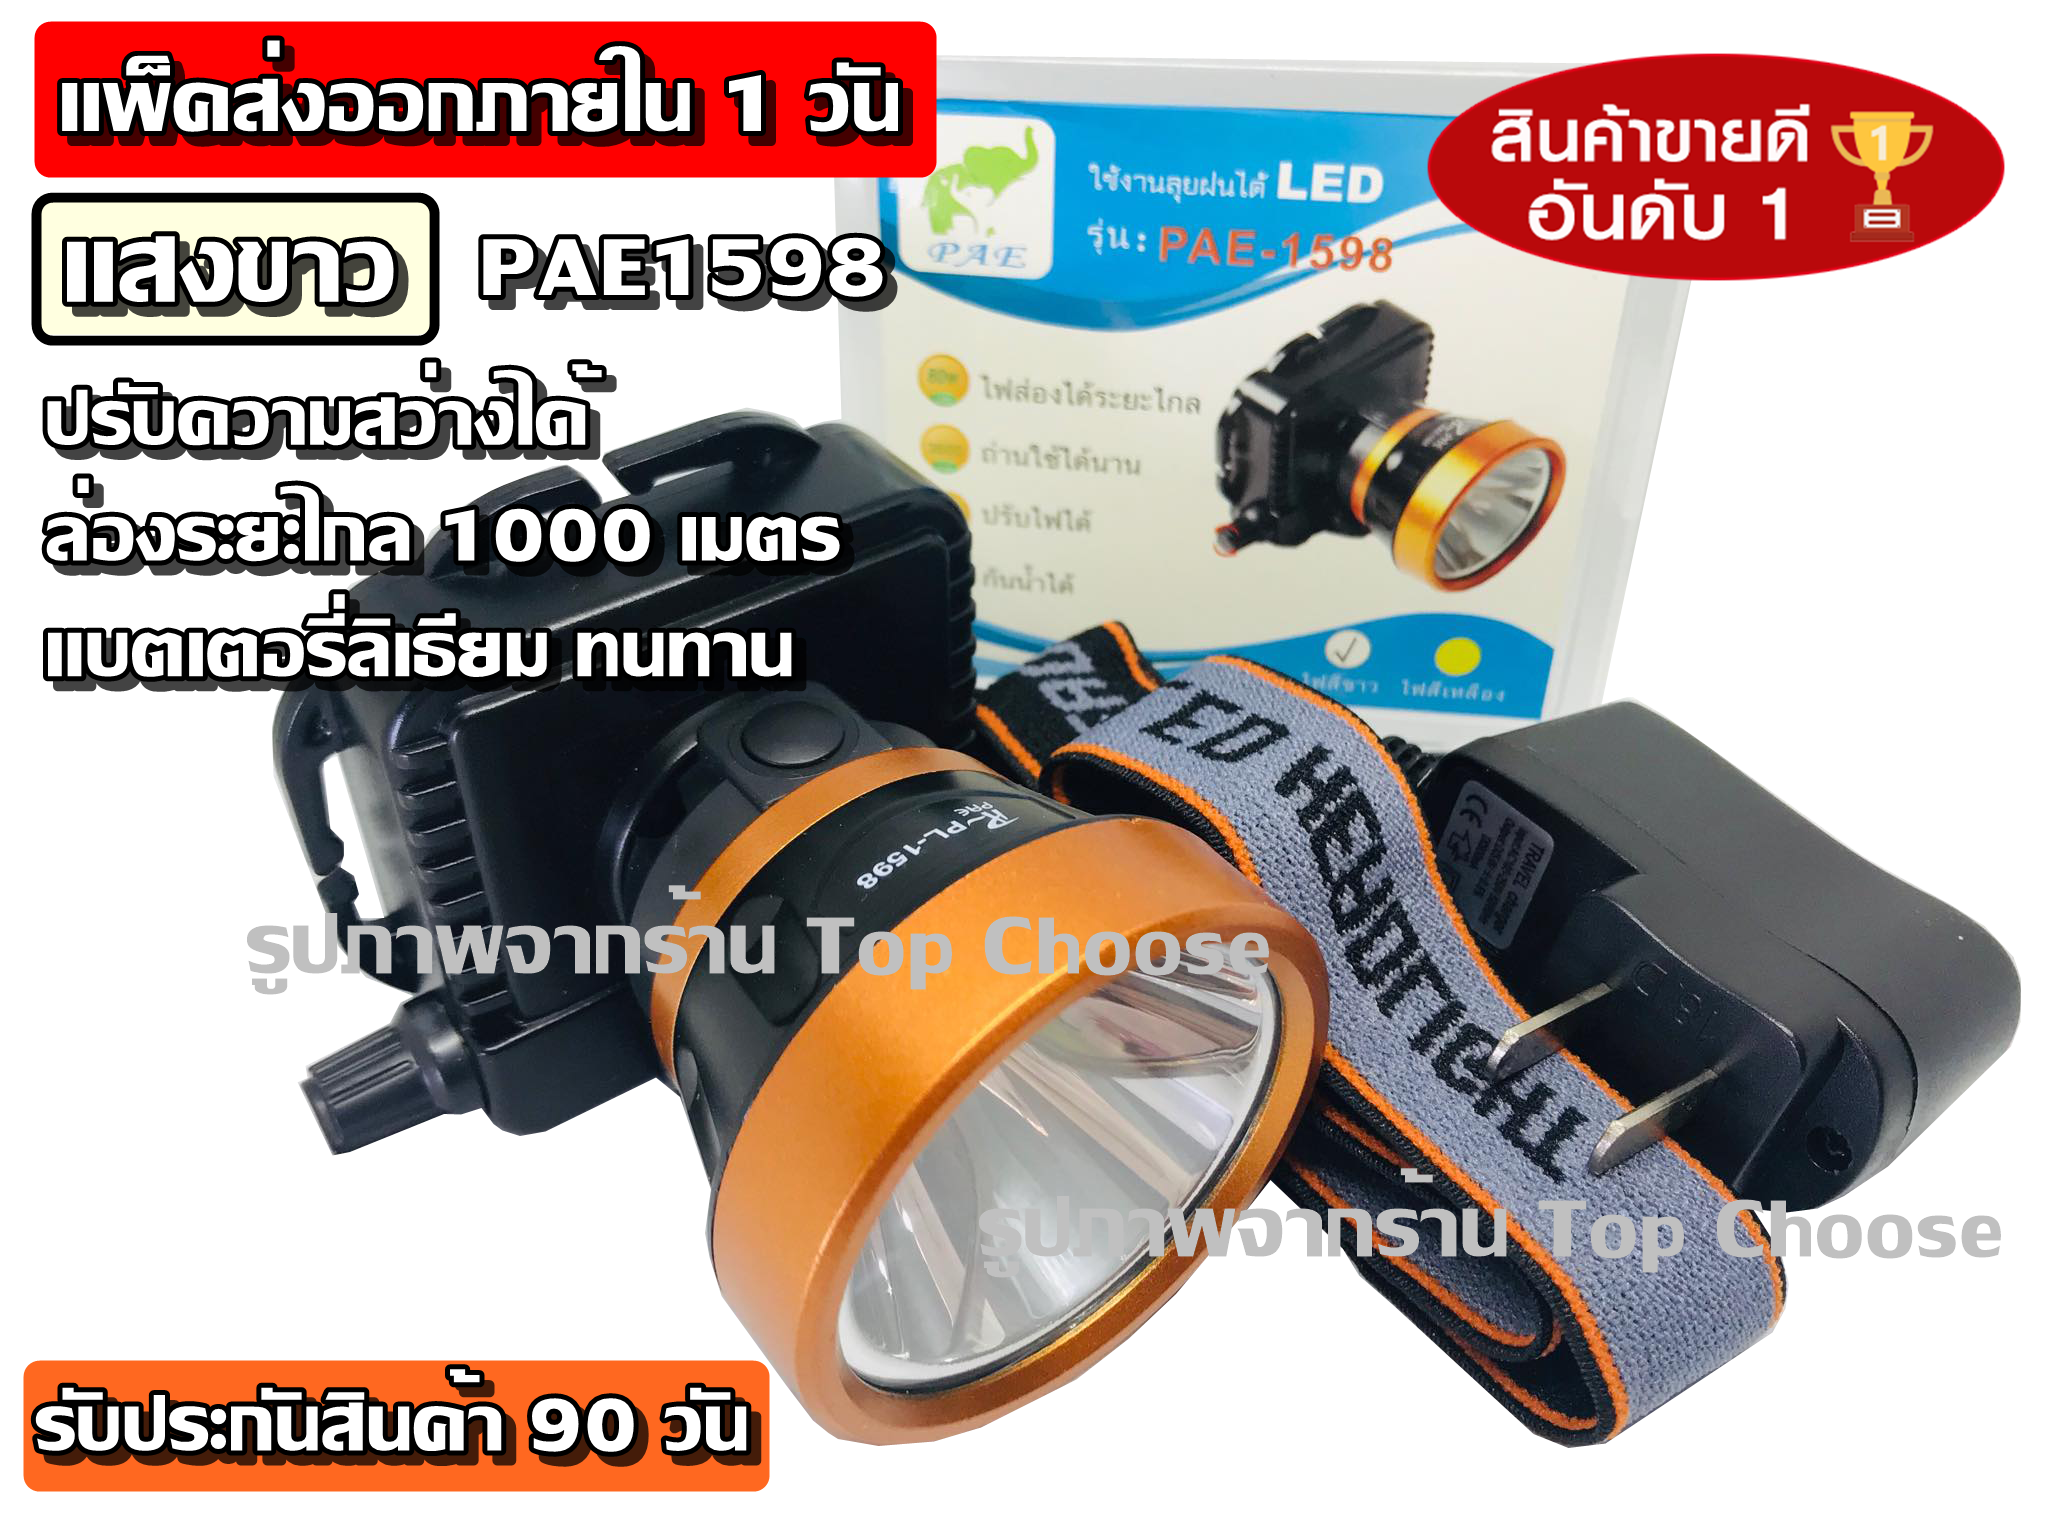 ส่งฟรี ส่งด่วน!! ไฟฉาย ไฟฉายคาดหัว ไฟฉายคาดศีรษะ ( แสงเหลือง / แสงขาว ) รุ่น PL-1598 ไฟส่องกบ หน้าโคมกว้าง 4 ซม LED High power headlamp แบตลิเทียม สวิตช์แบบหมุน รับประกันสินค้า (สามารถเลือกแสงได้เลยนะคะ)